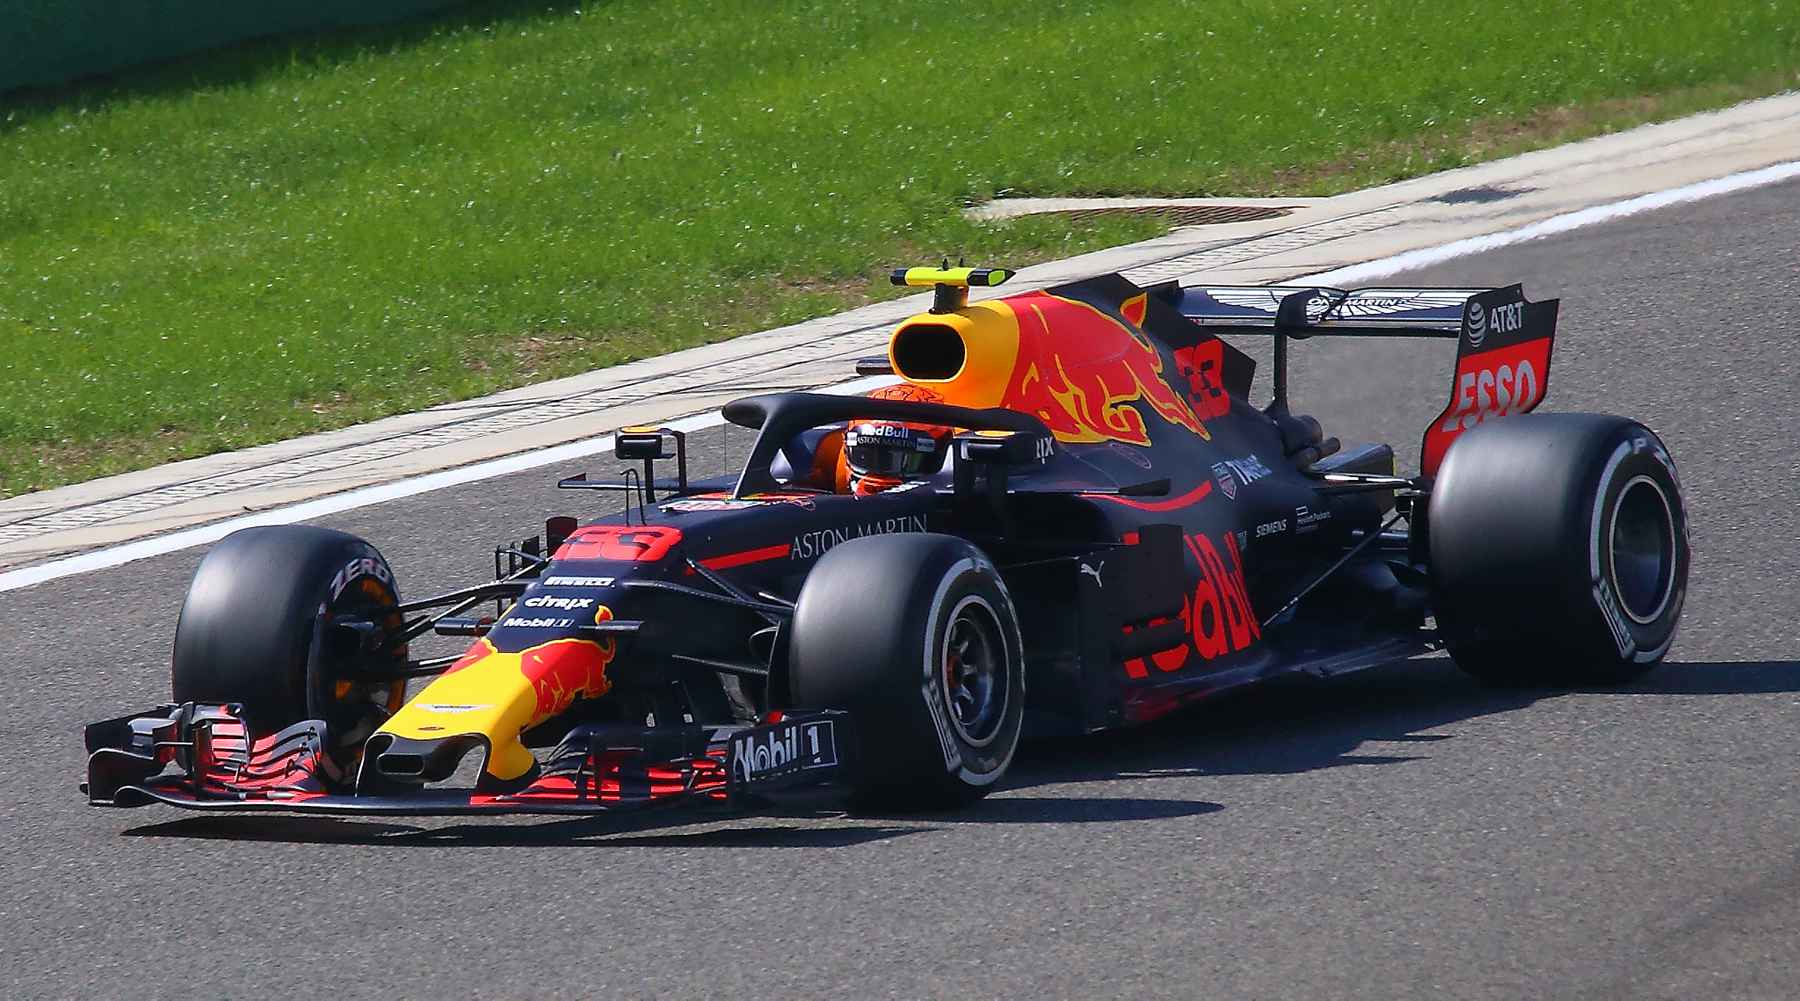 Formule 1 Grand Prix in Hanoi Vietnam 2020